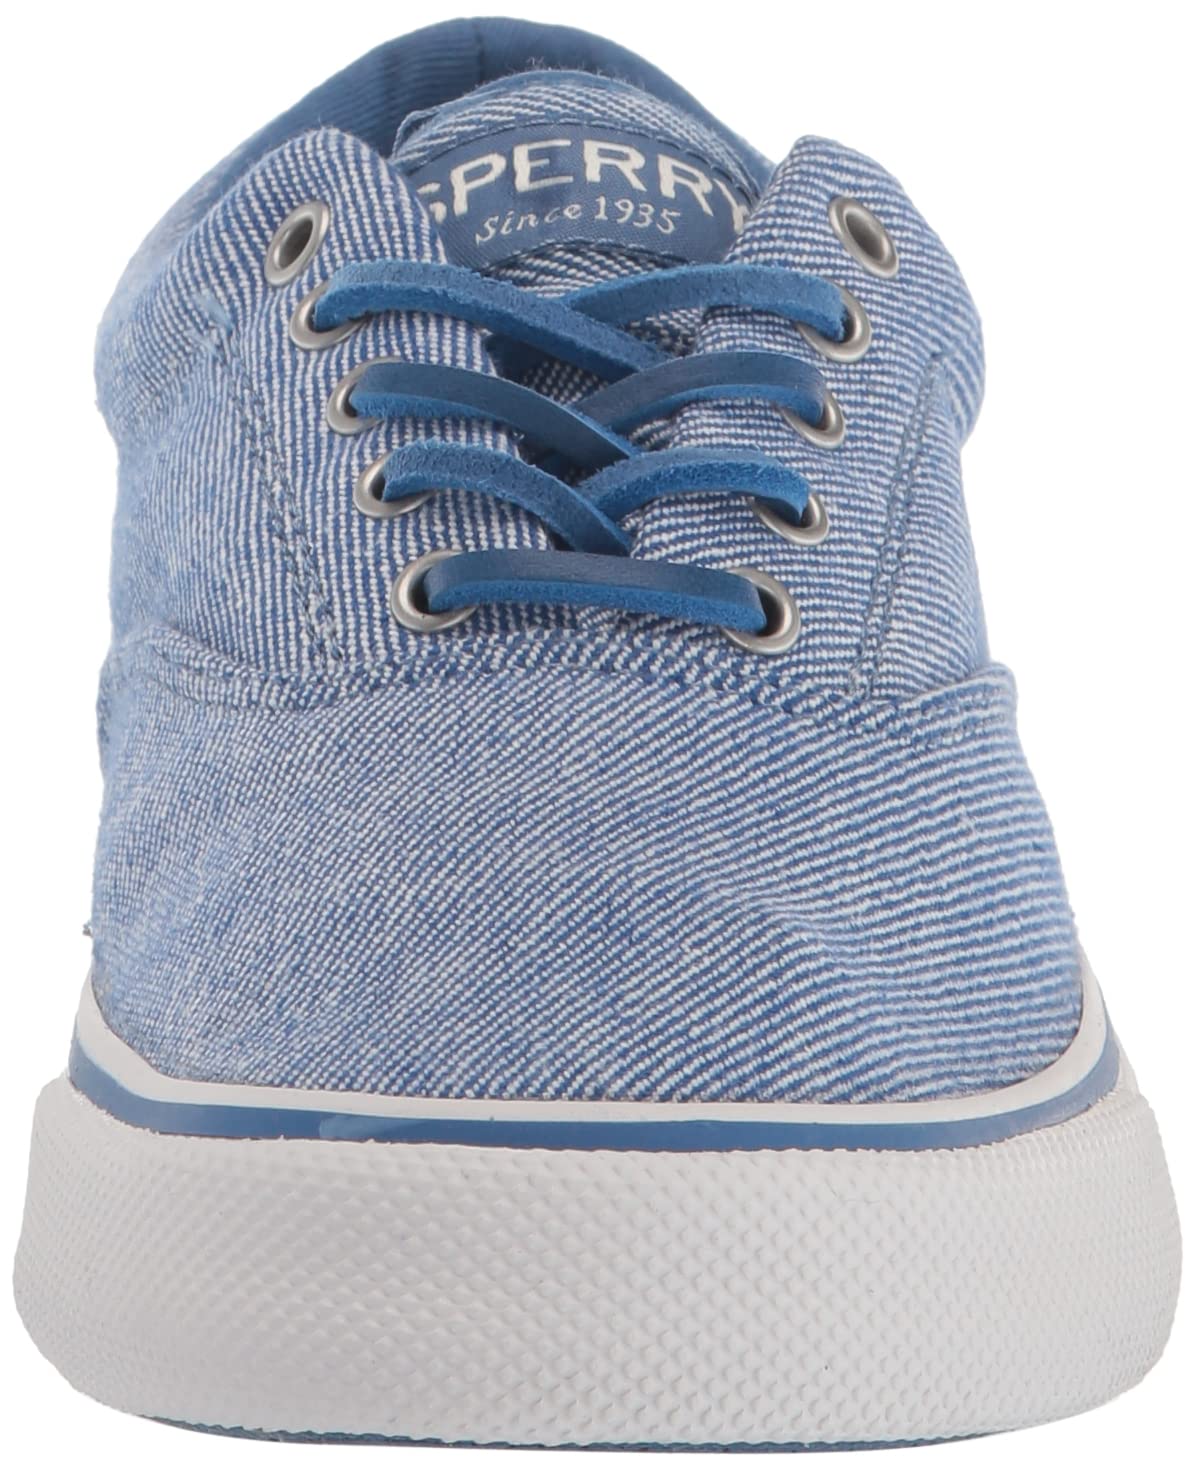 Sperry Men's Striper II CVO Sneaker, Blue, 9.5